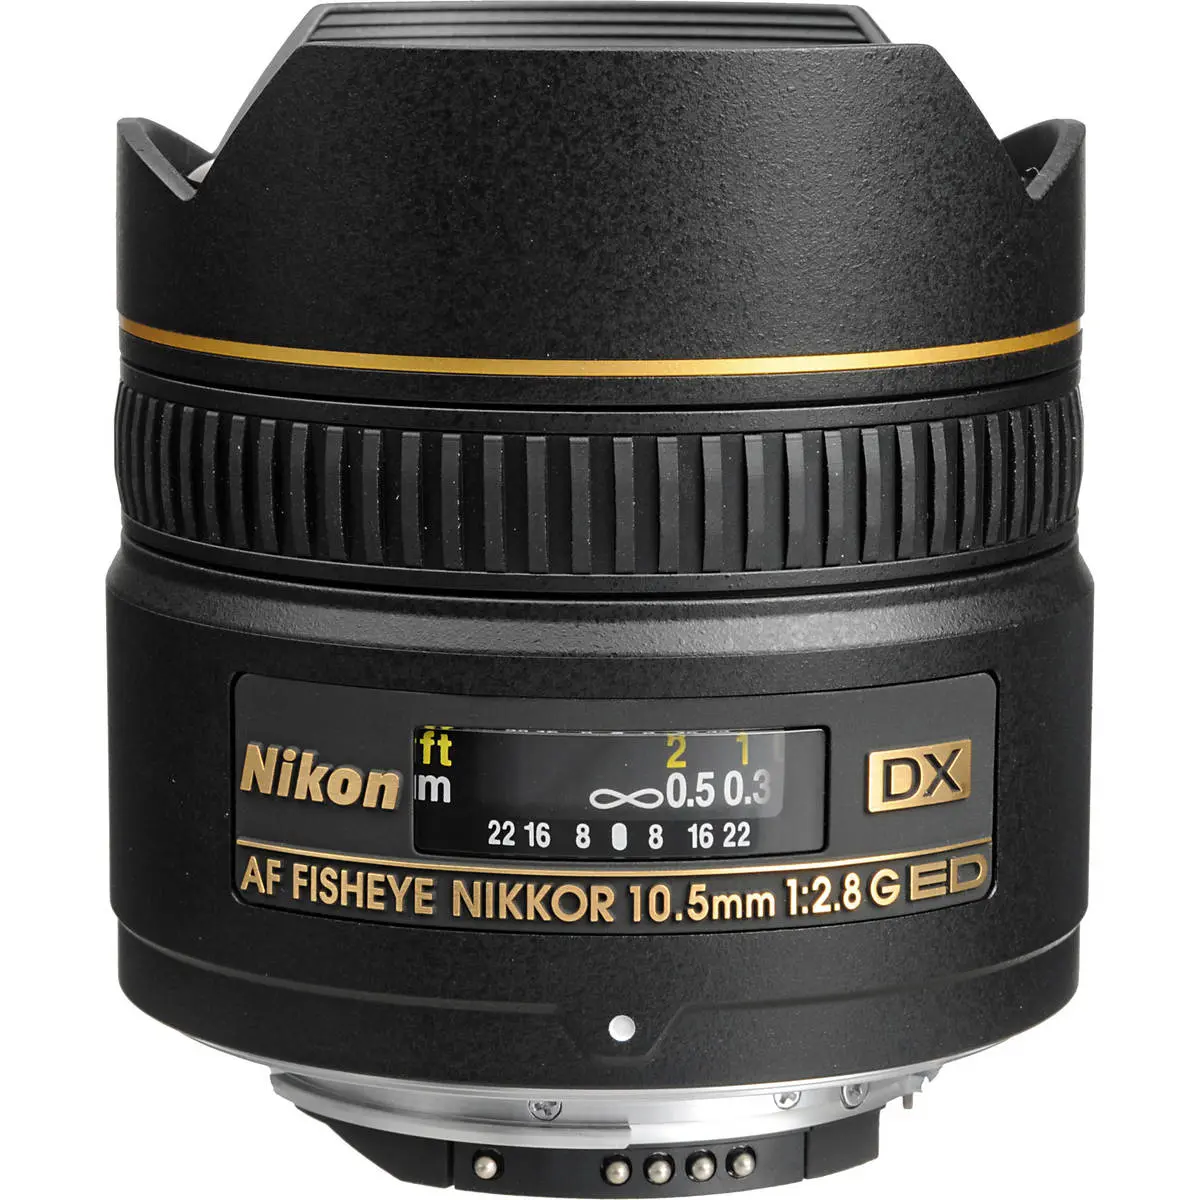 1. Nikon AF DX Fisheye-Nikkor 10.5mm f/2.8G ED